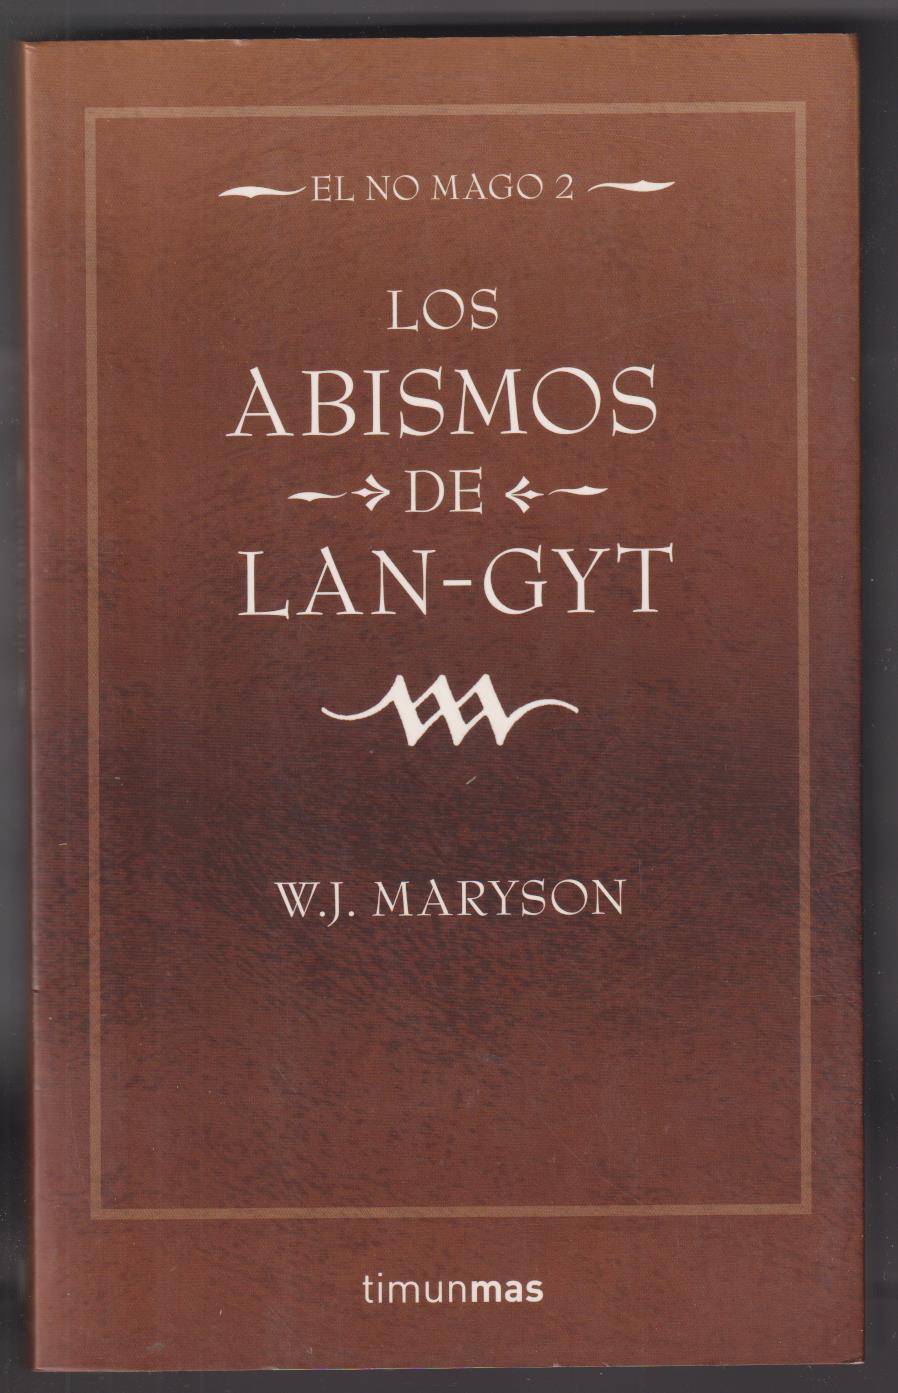 W. J. Maryson. Los Abismos de Lan-Gyt. 1ª Edición Timunmas 2005. SIN USAR